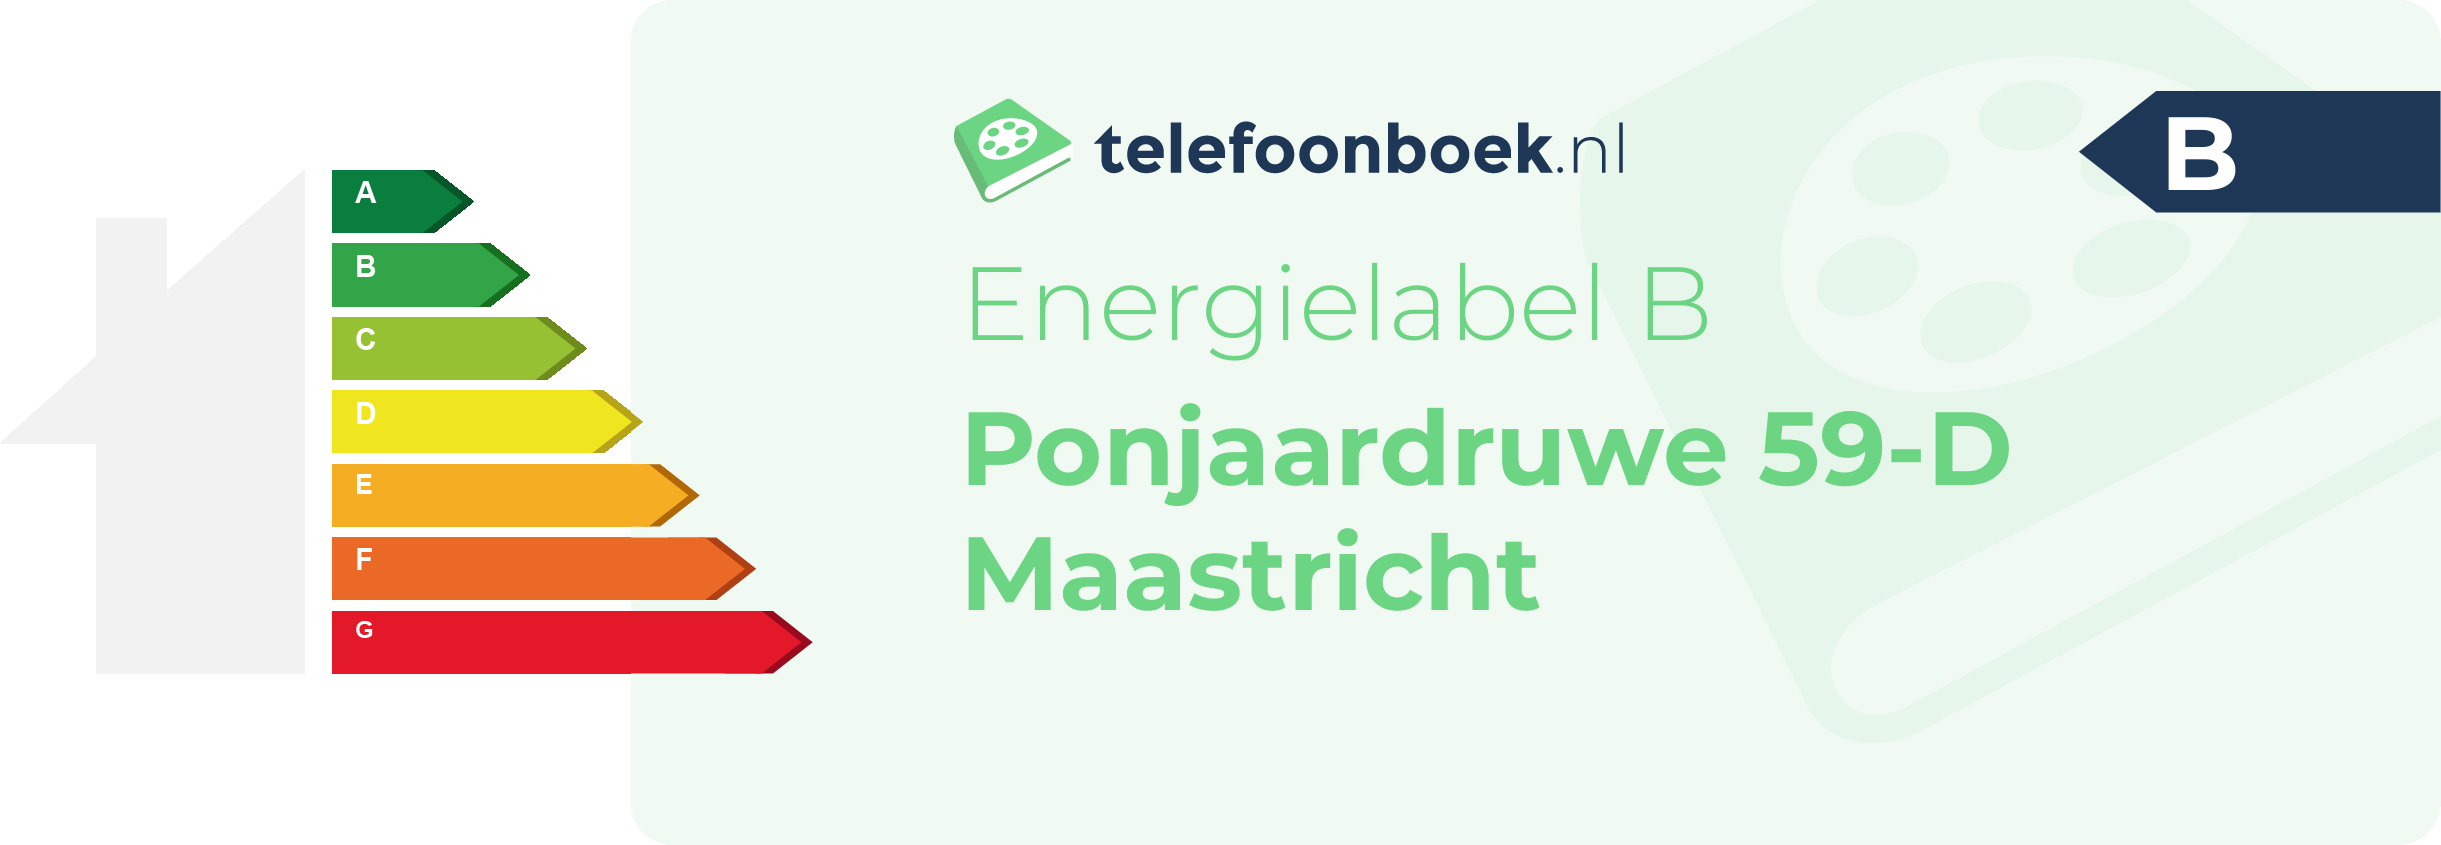 Energielabel Ponjaardruwe 59-D Maastricht